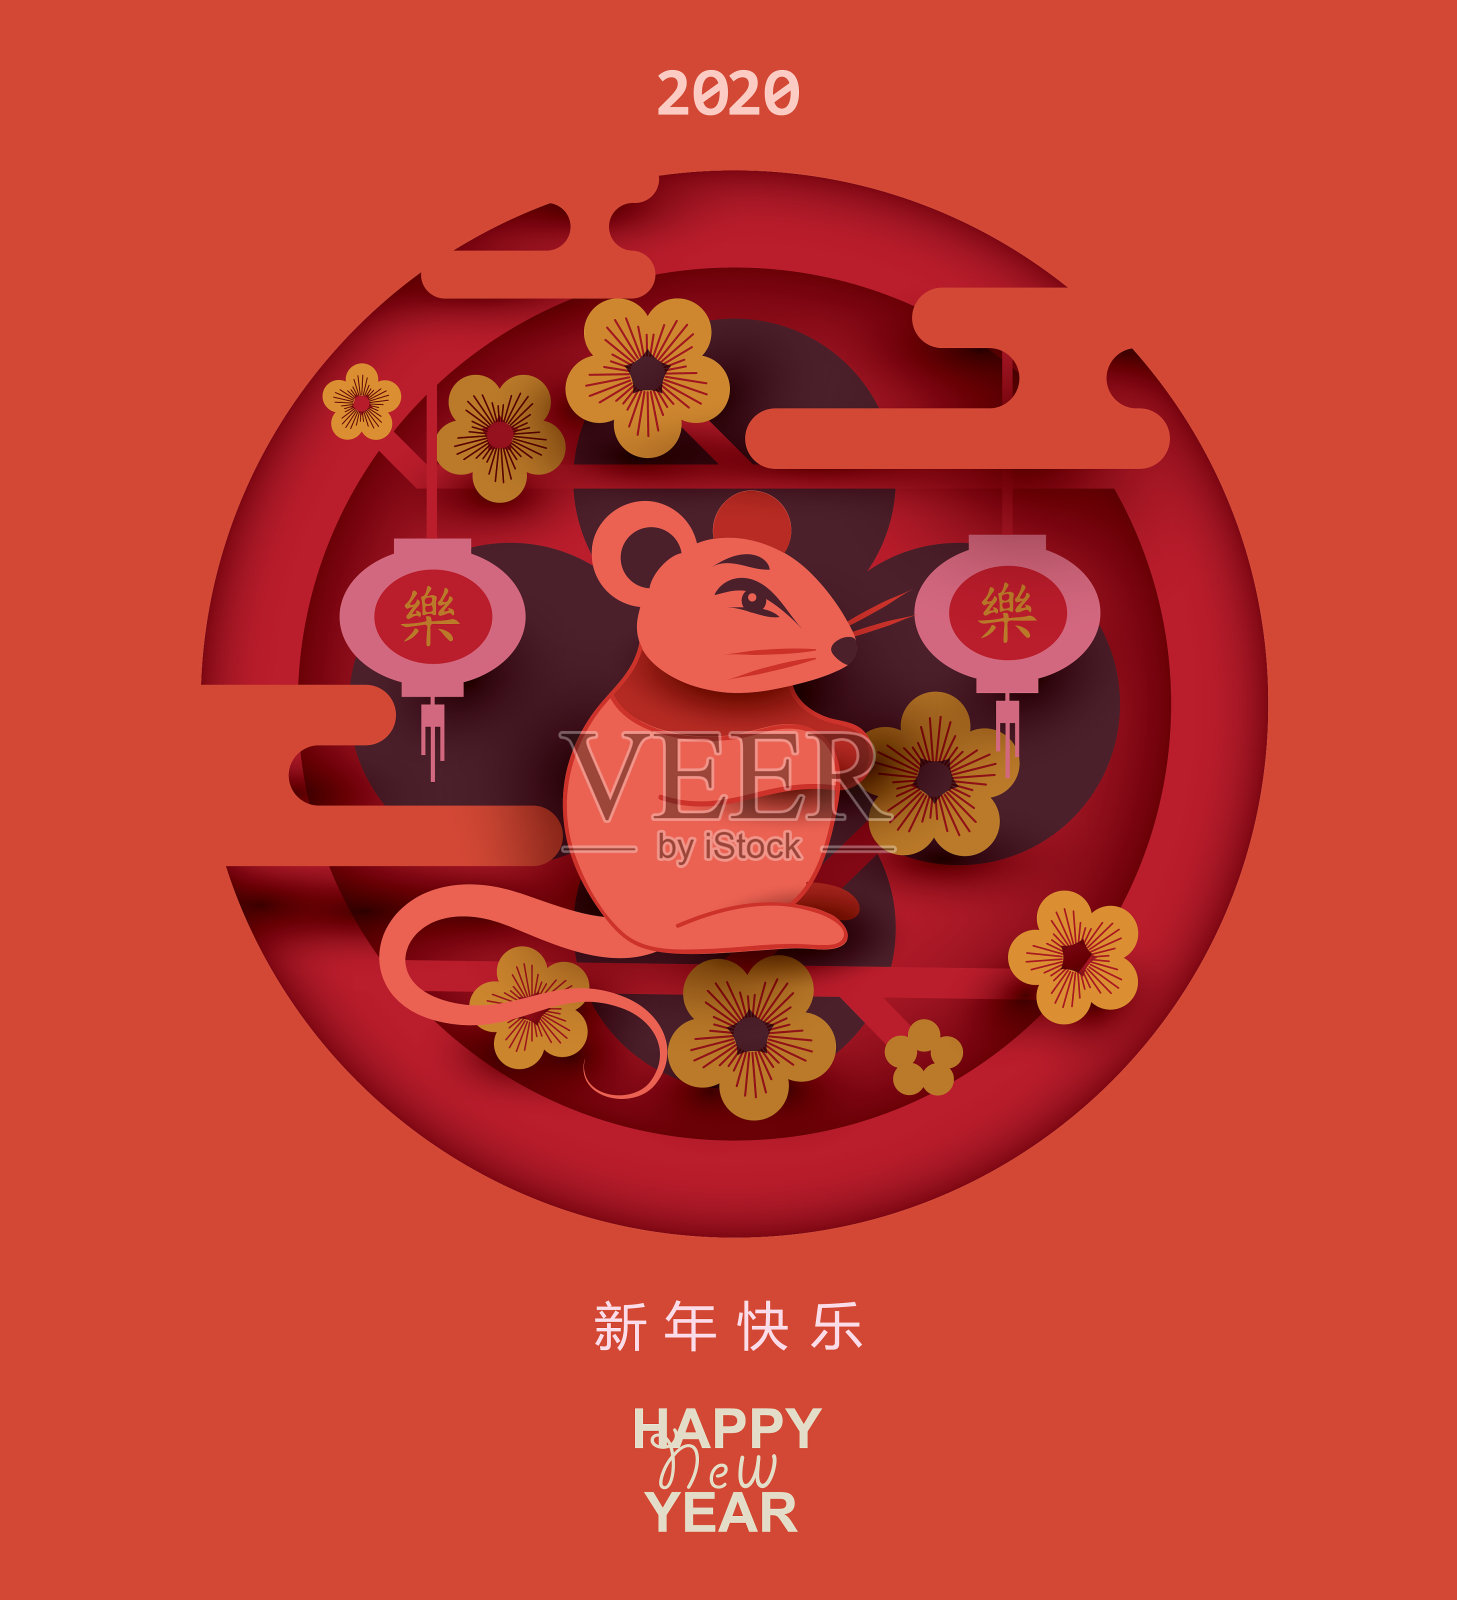 2020年中国新年。农历鼠年。带有东方元素的剪纸风格设计模板素材